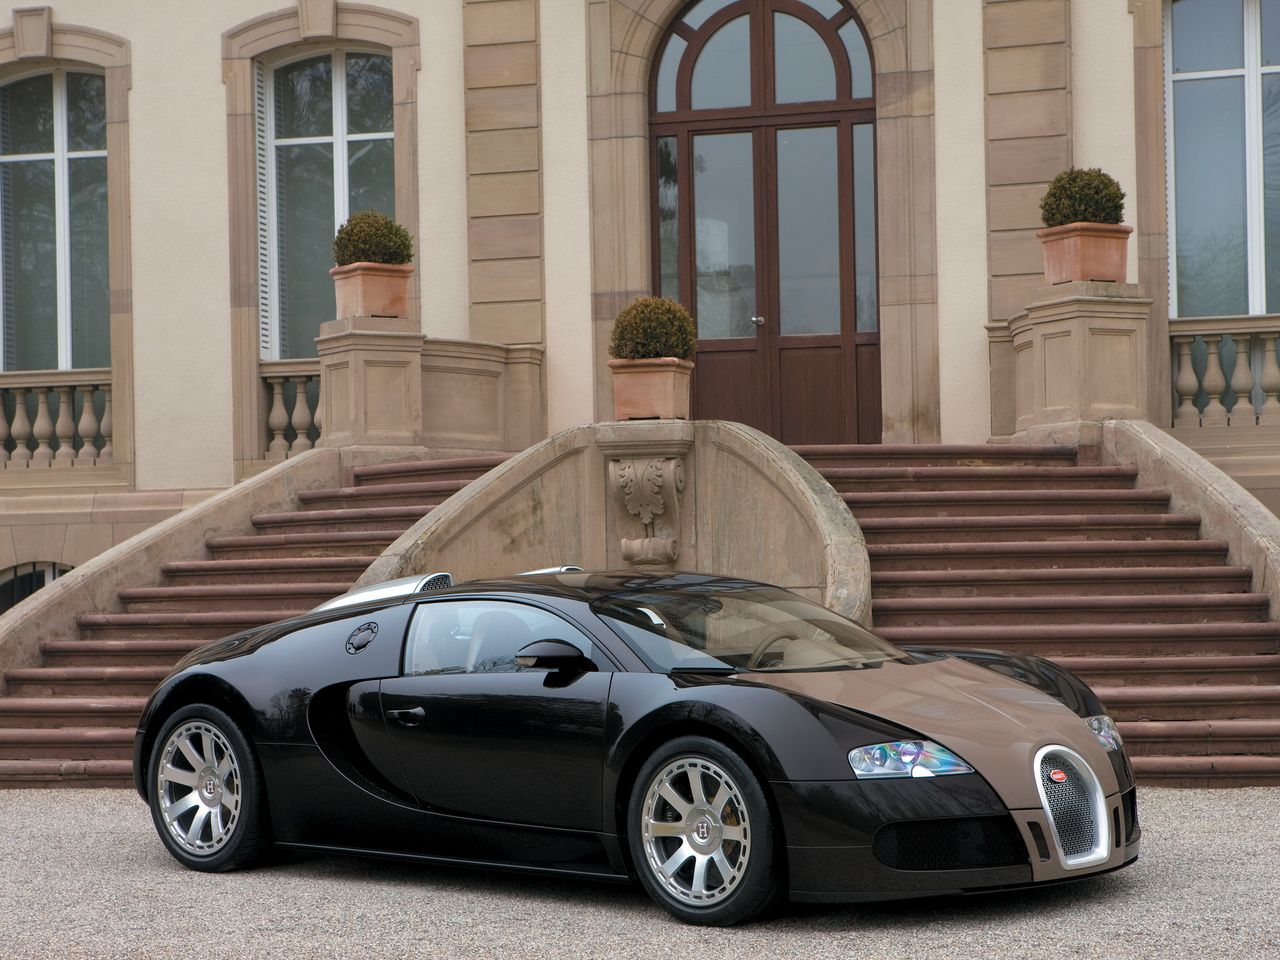 Bugatti Veyron Fbg Par Hermes powstał w 2008 roku. W jego stworzeniu pomagał stylista Gabriele Pezzini, który wpadł na pomysł, że samochód może współtworzyć francuski dom mody Hermes.